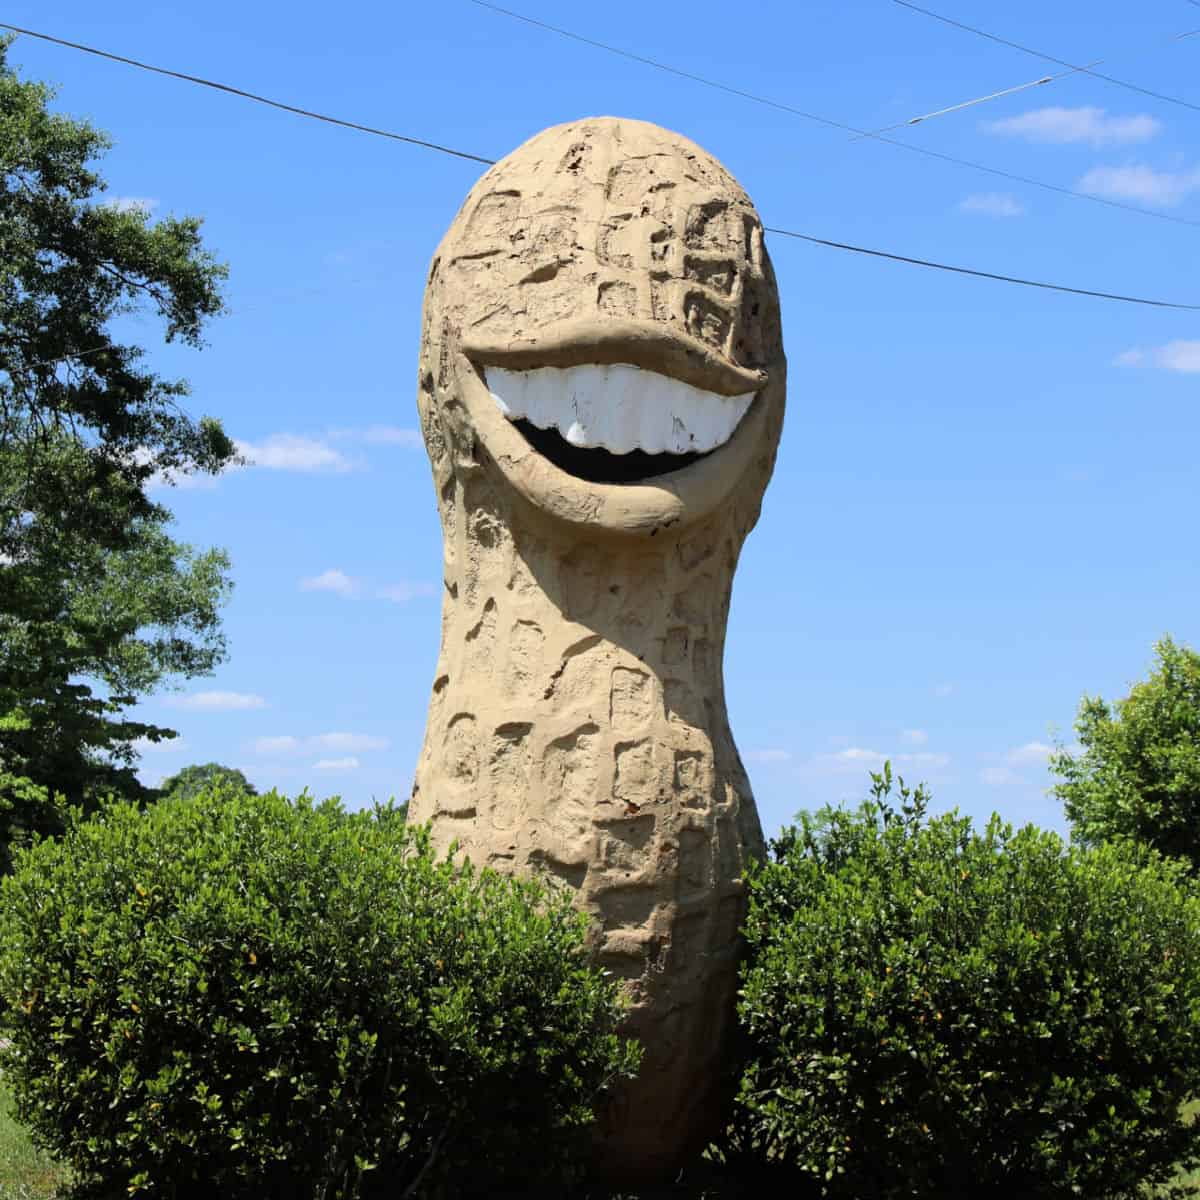 Smiling Peanut in Plains Georgia